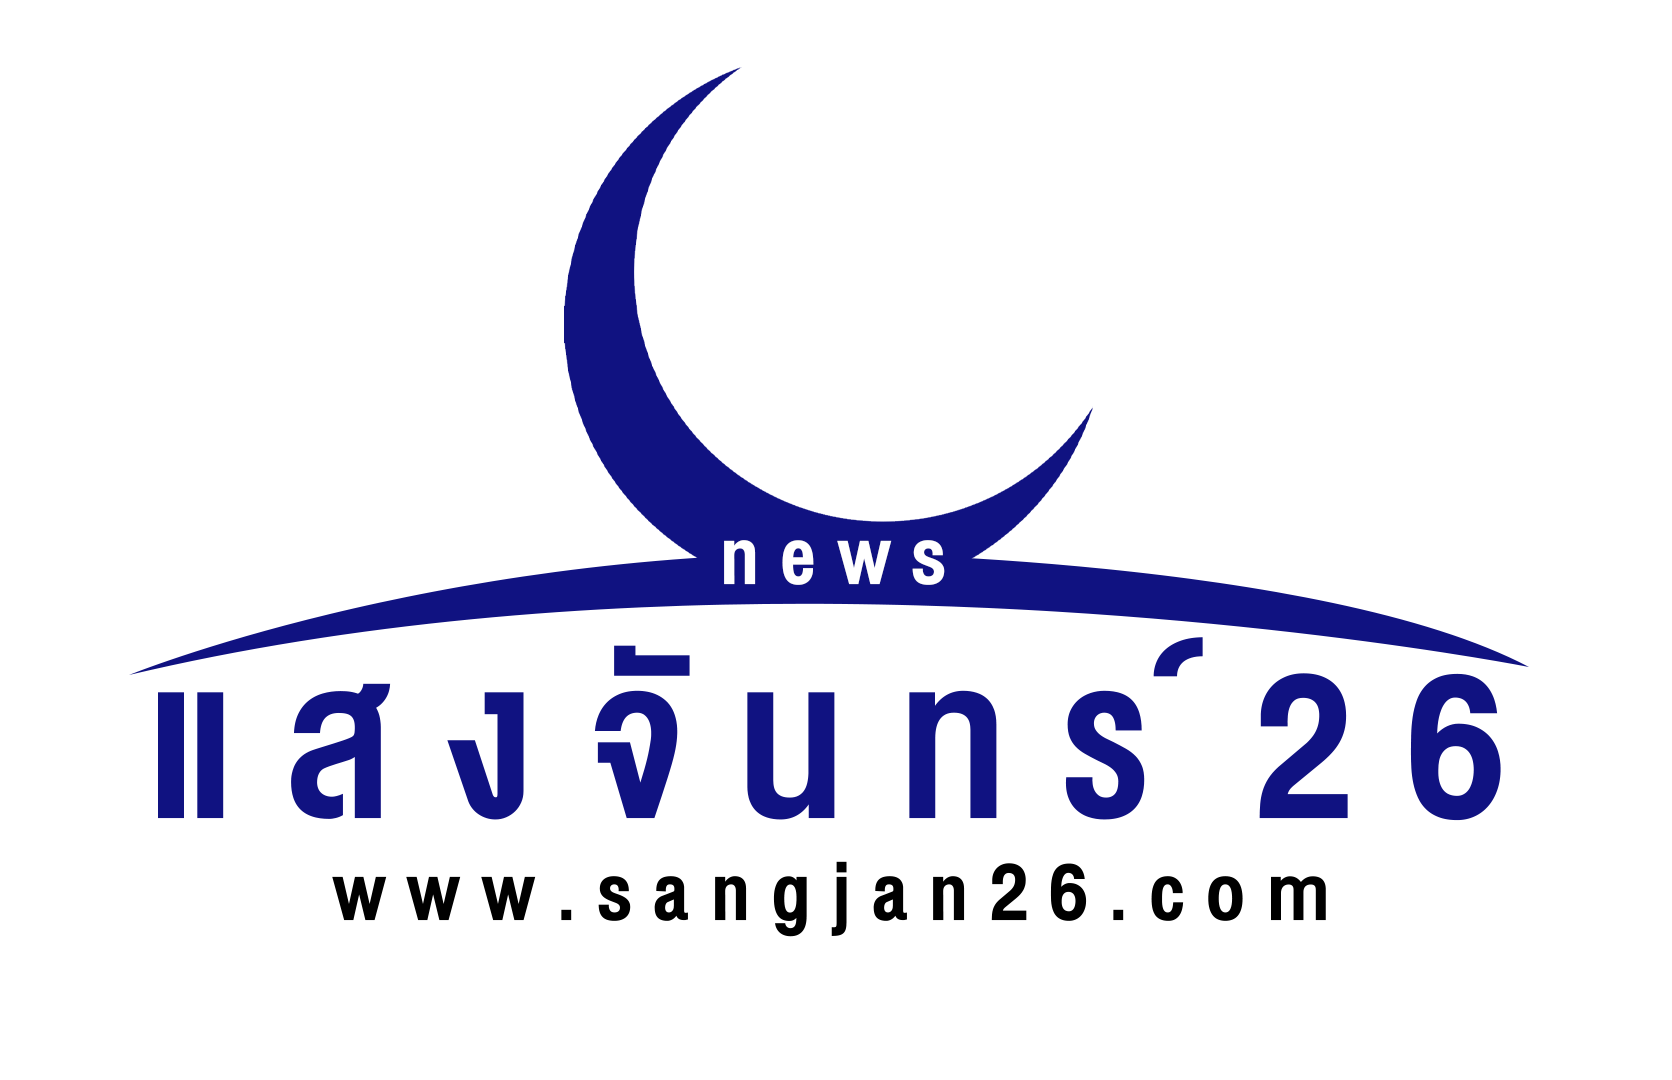 แสงจันทร์26 ติดตามข่าวอาชญากรรม คดีสะเทือนขวัญ  ยาเสพติด การเมือง เศรษฐกิจ สังคมล่าสุด ทุกพื้นที่ในประเทศไทย